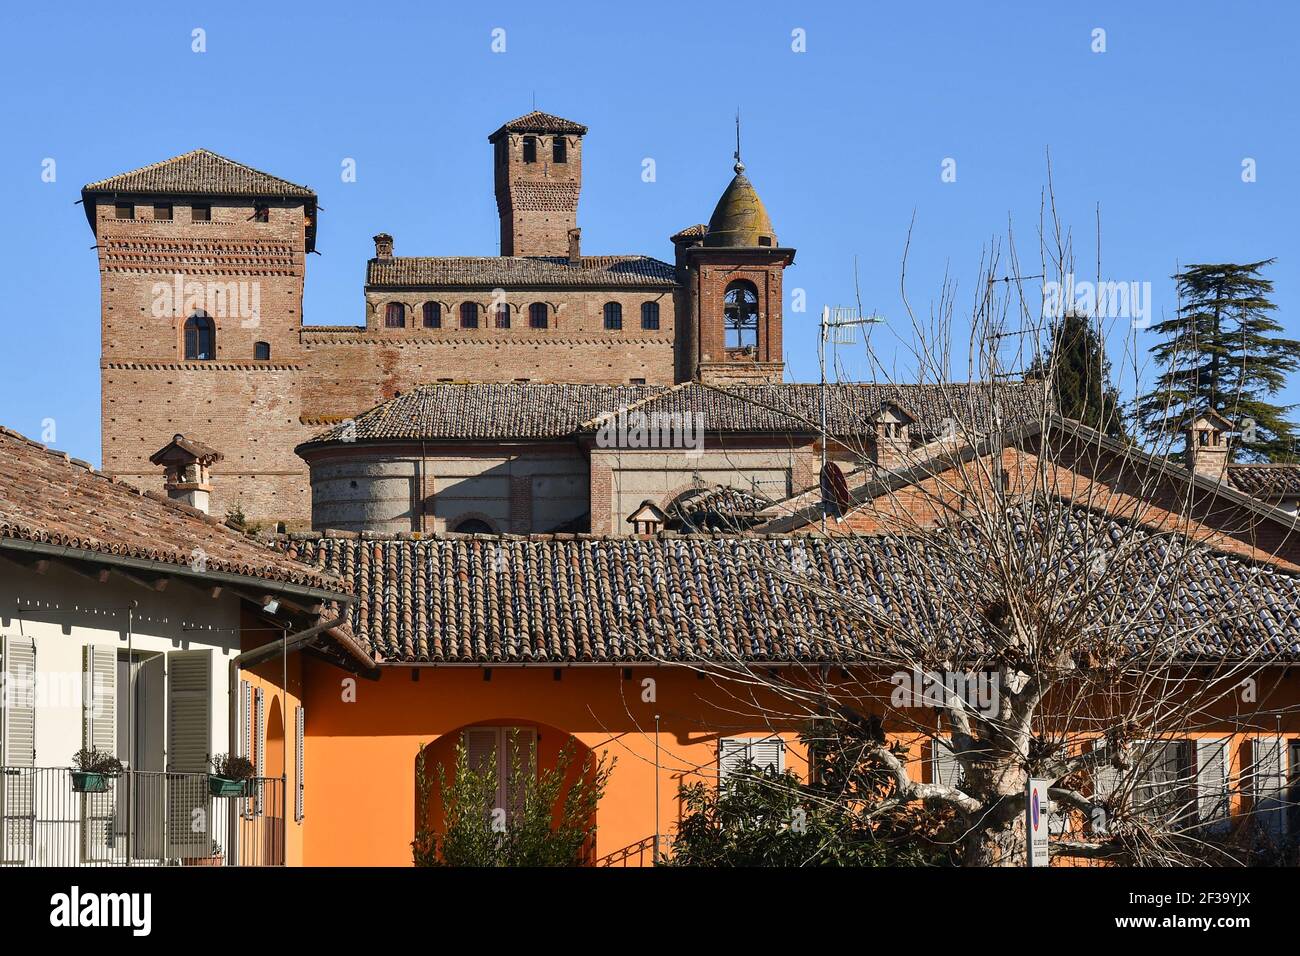 Vista sul tetto del castello medievale di Grinzane Cavour, una fortificazione iscritta nella lista del Patrimonio Mondiale dell'UNESCO, provincia di Cuneo, Piemonte, Italia Foto Stock